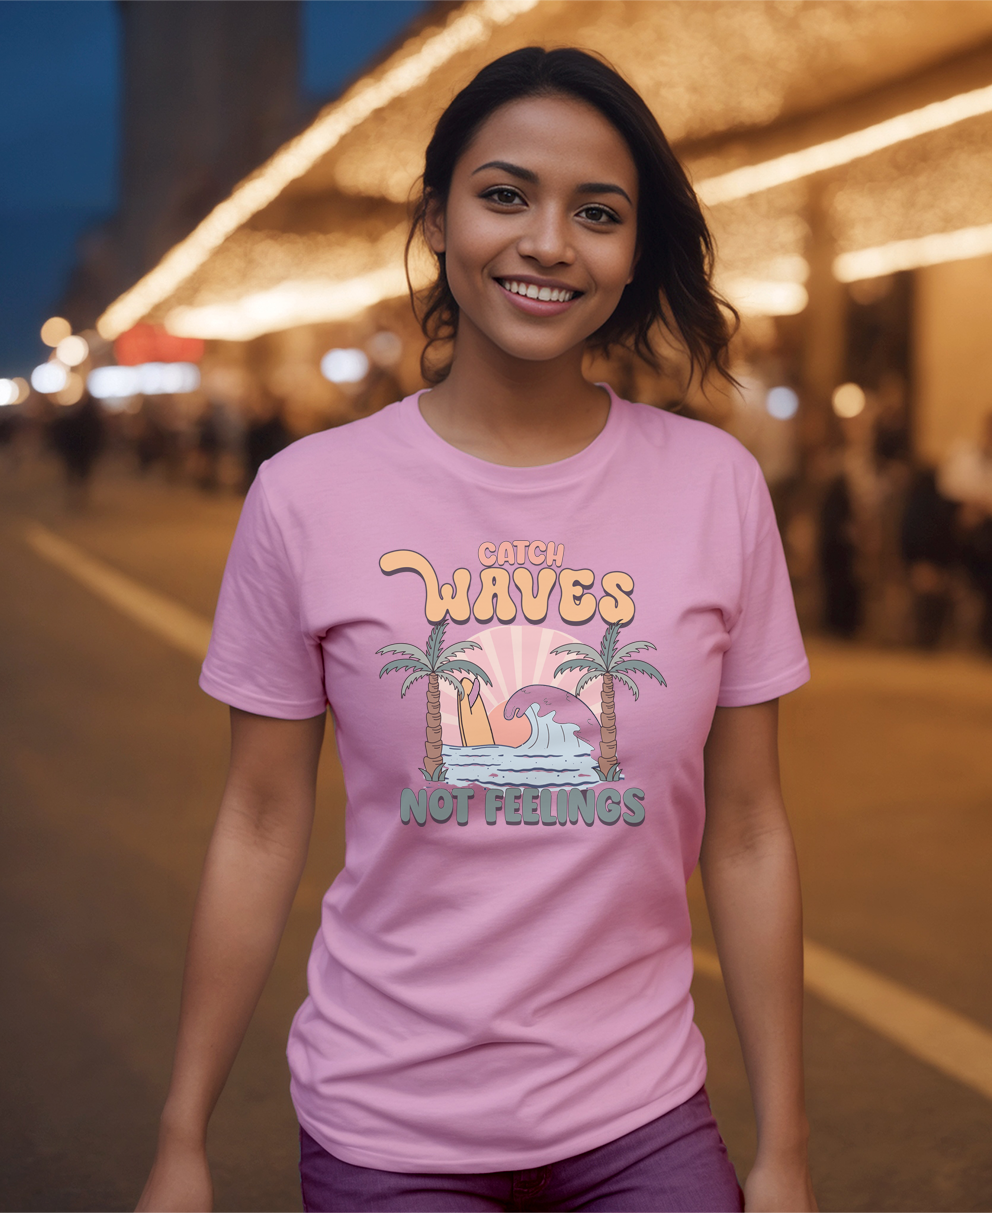 Catch Waves Not Feelings T-Shirt